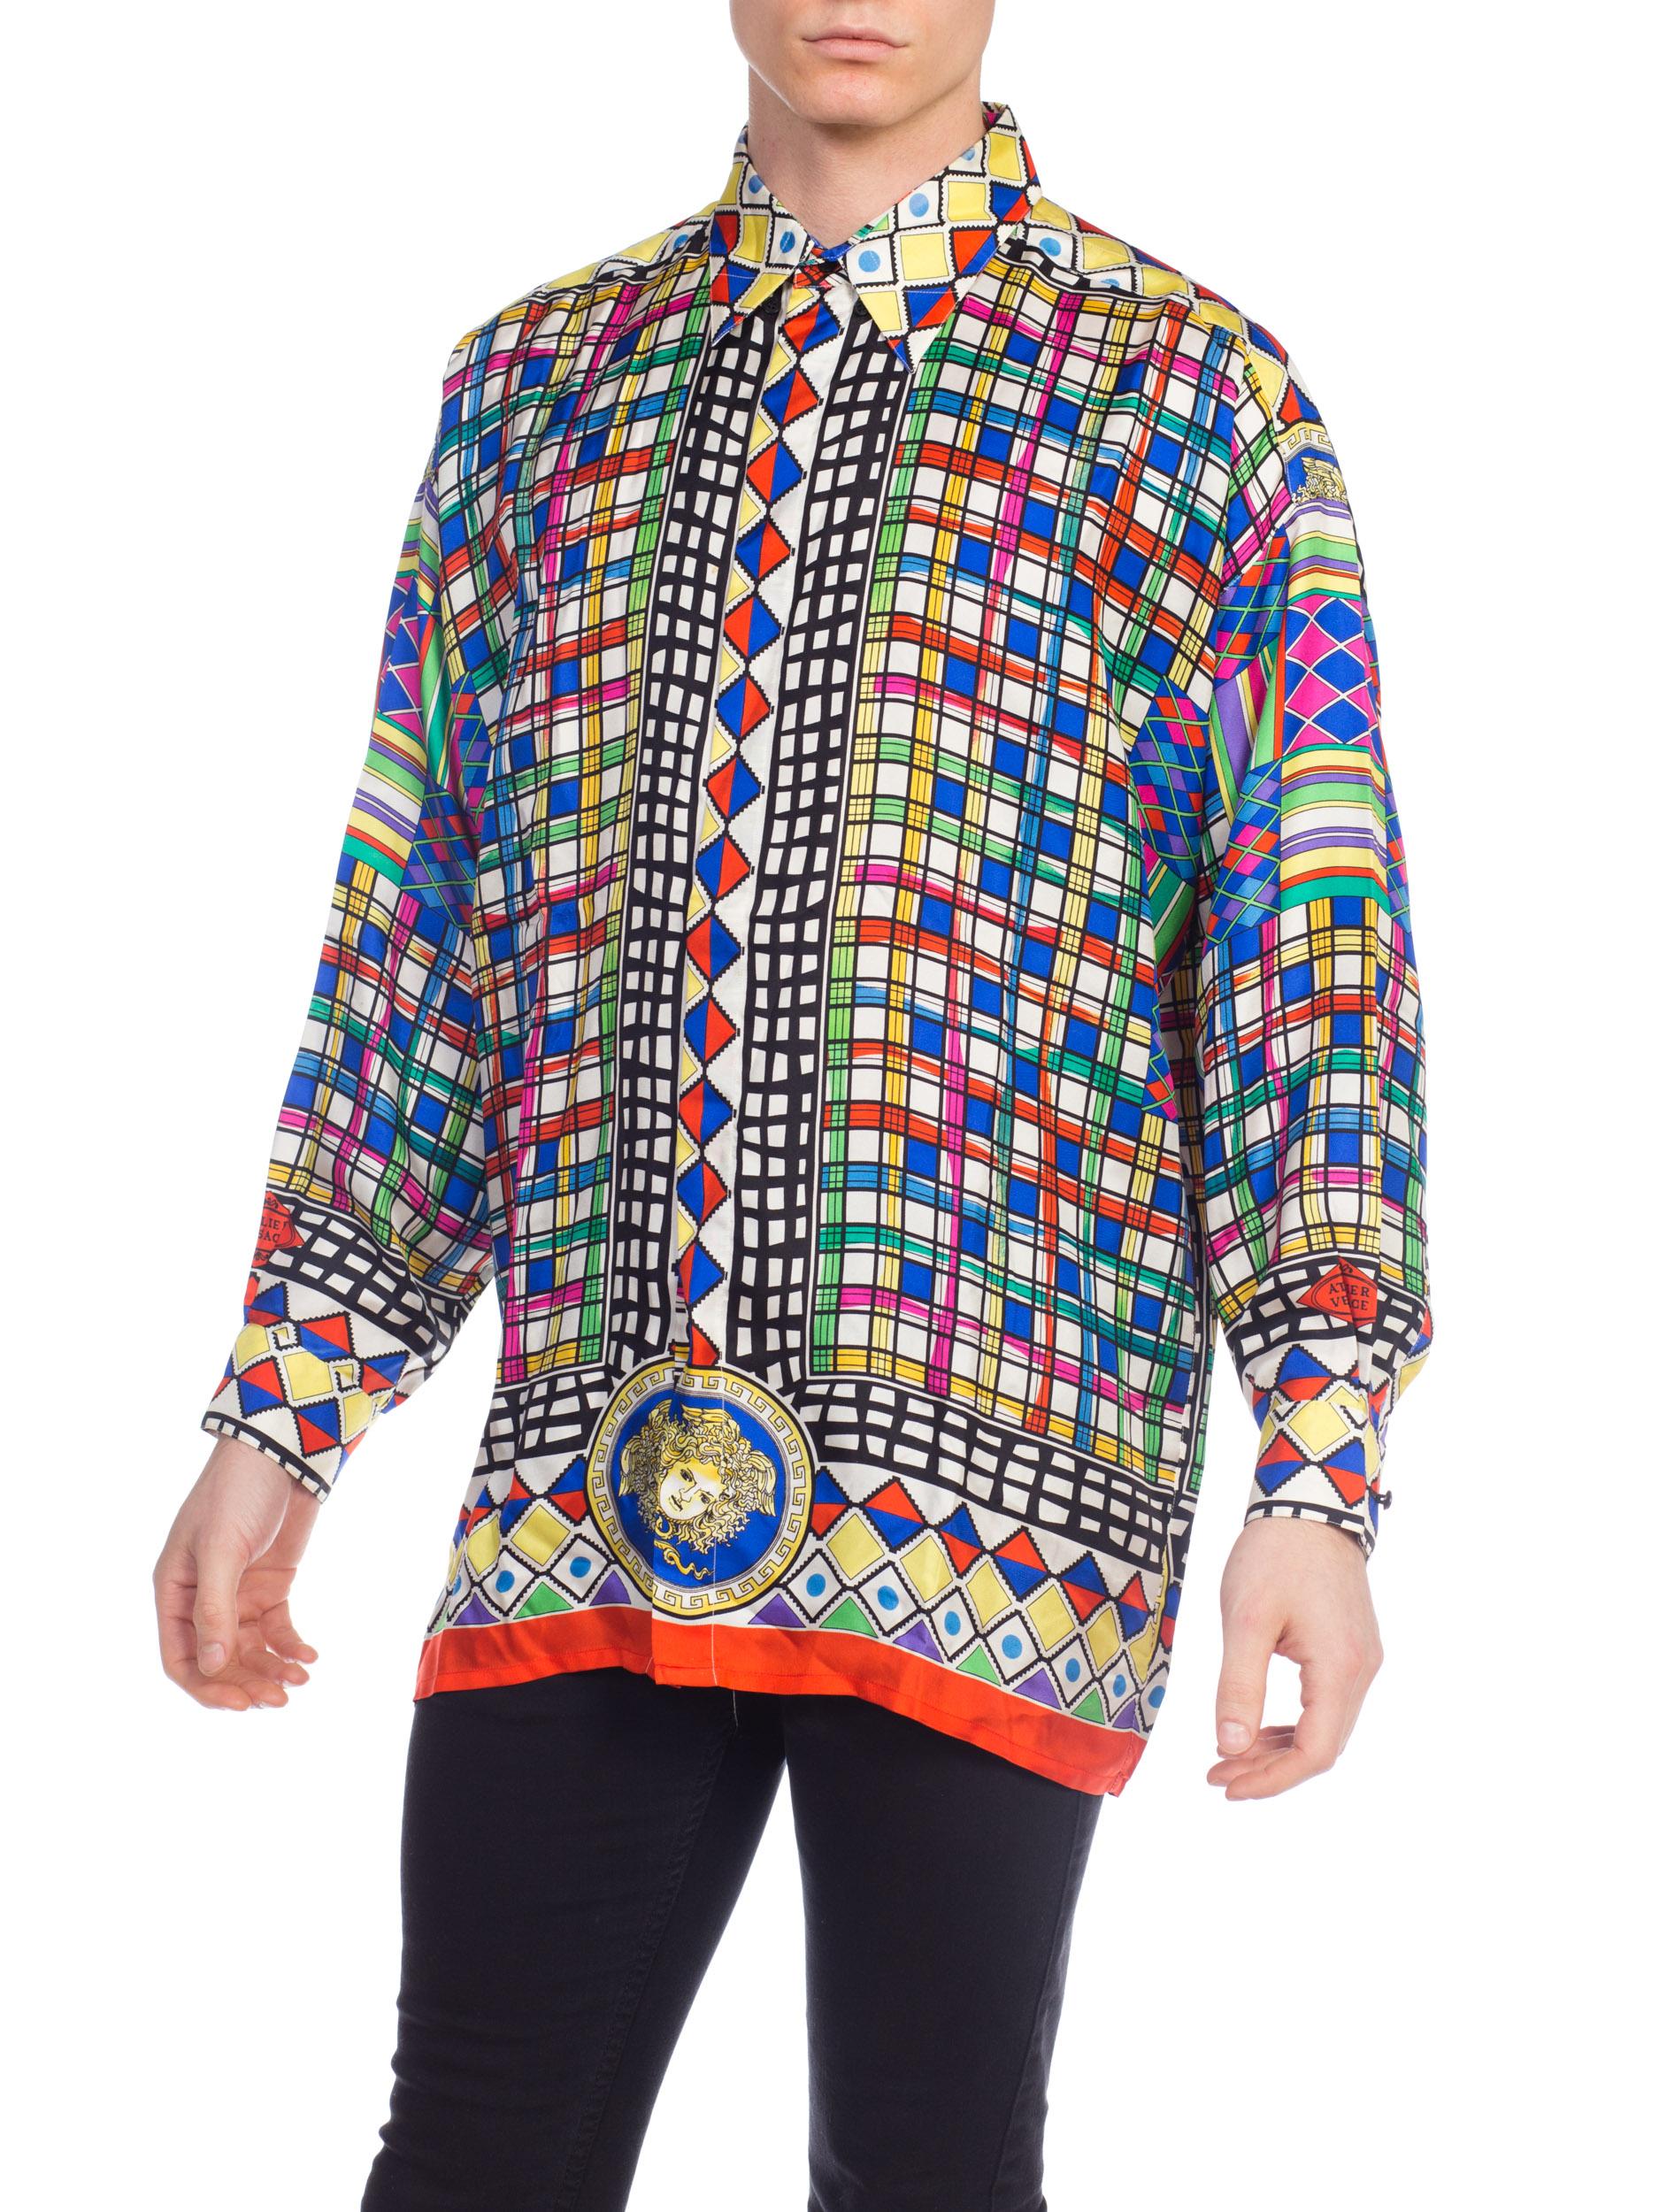 chemise GIANNI VERSACE 1990S en soie géométrique multicolore pour hommes Sz 50